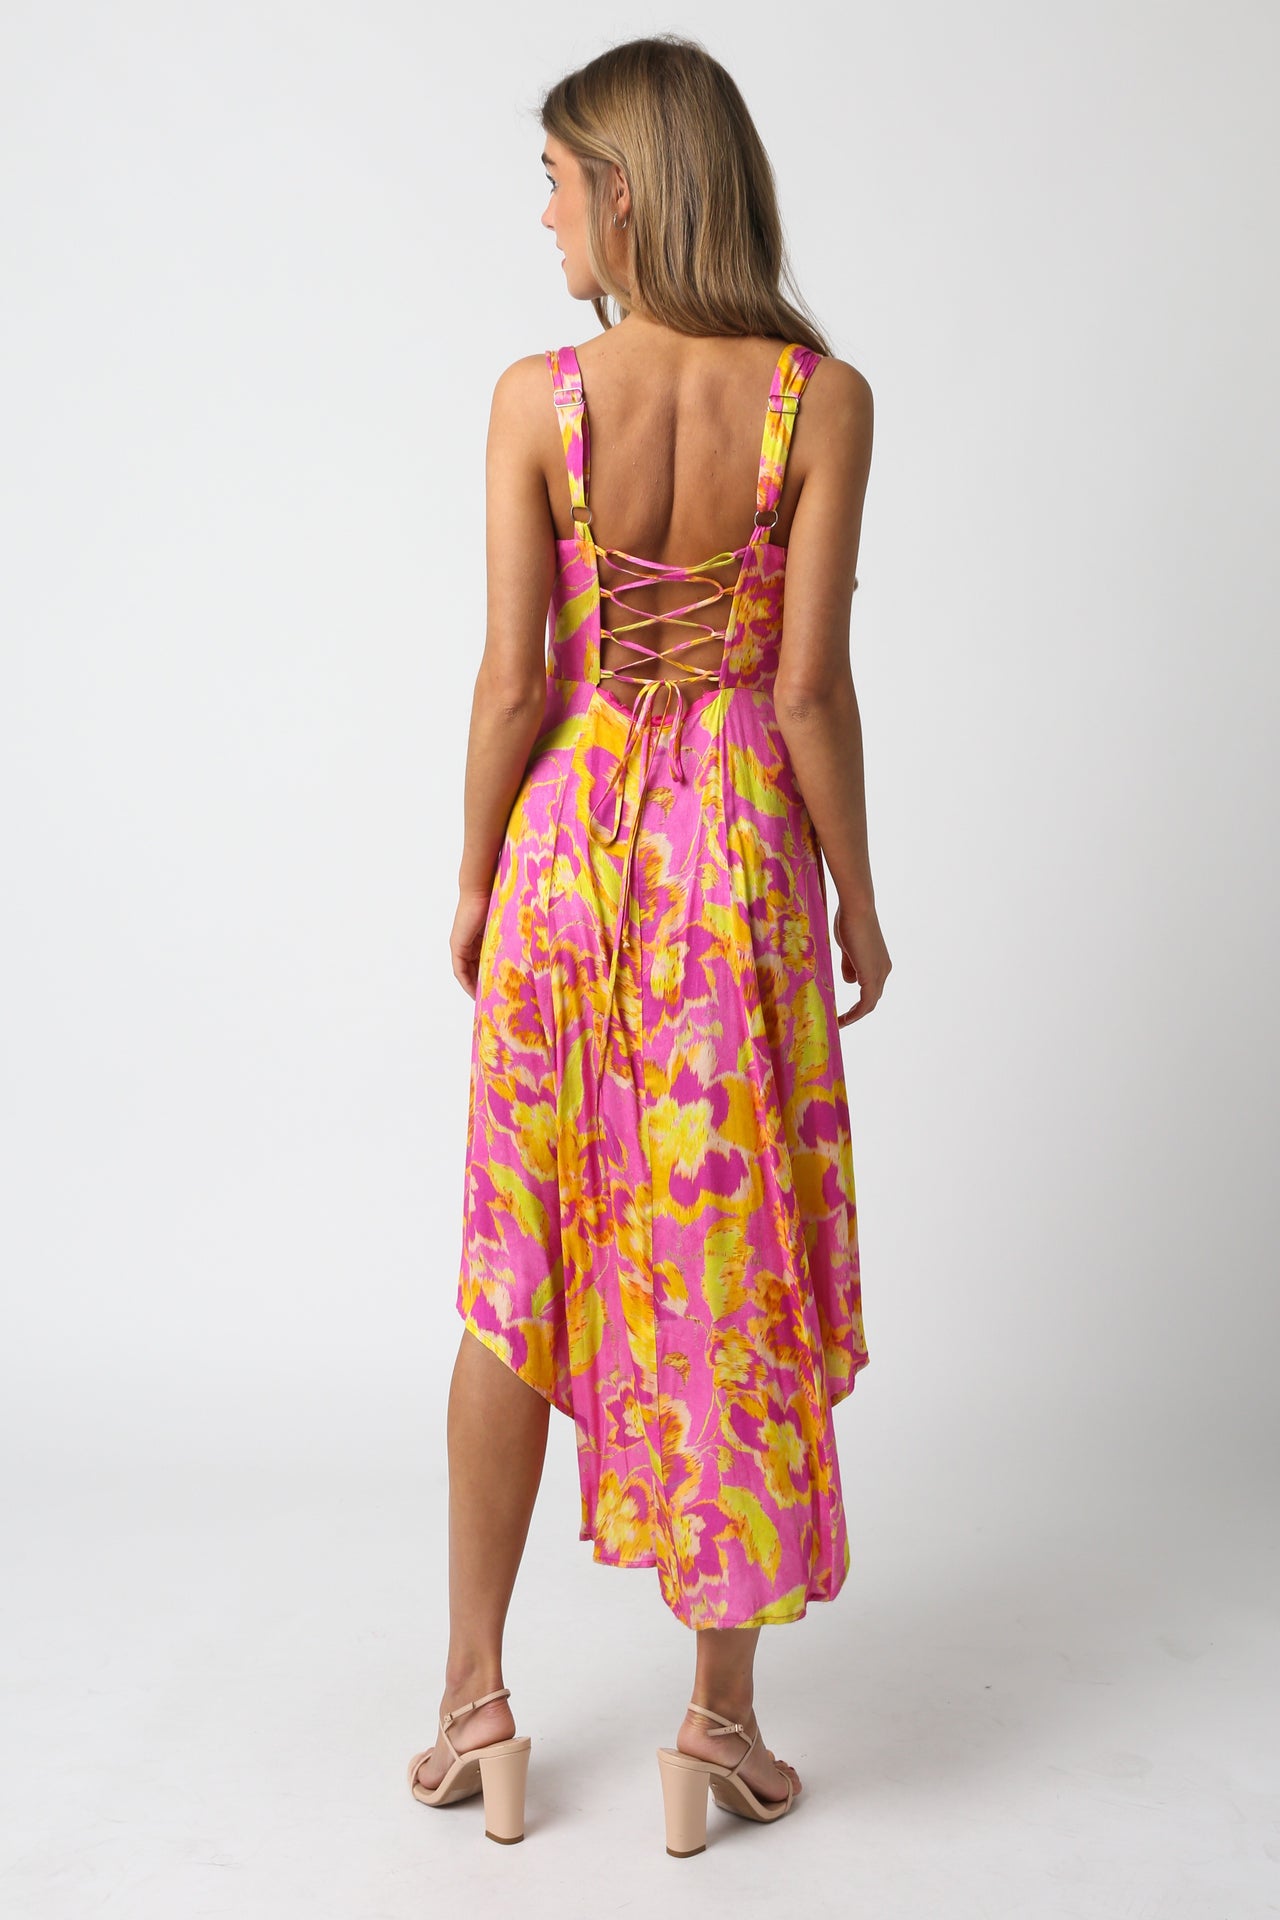 Floral Sunset Mini Dress Pink, Mini Dress by Olivaceous | LIT Boutique